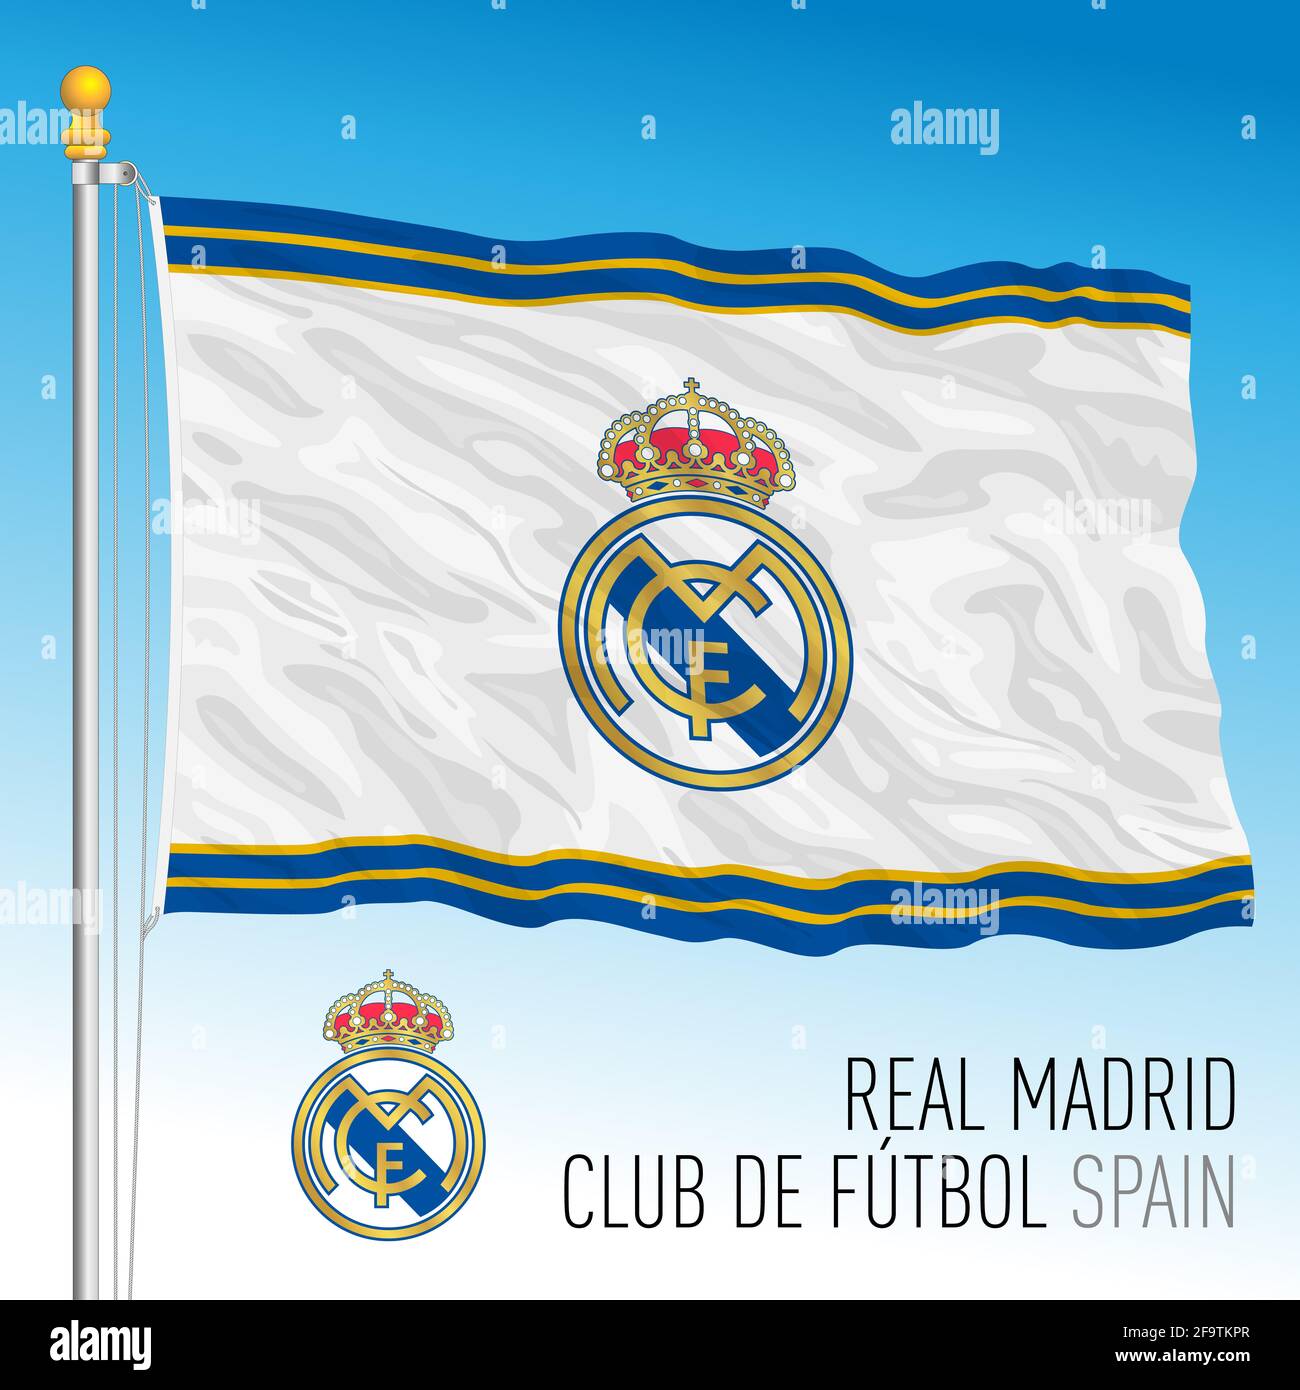 Europa, Jahr 2021, Real Madrid Football Club Flagge und Wappen-Team in der neuen Super League Meisterschaft, Illustration Stockfoto